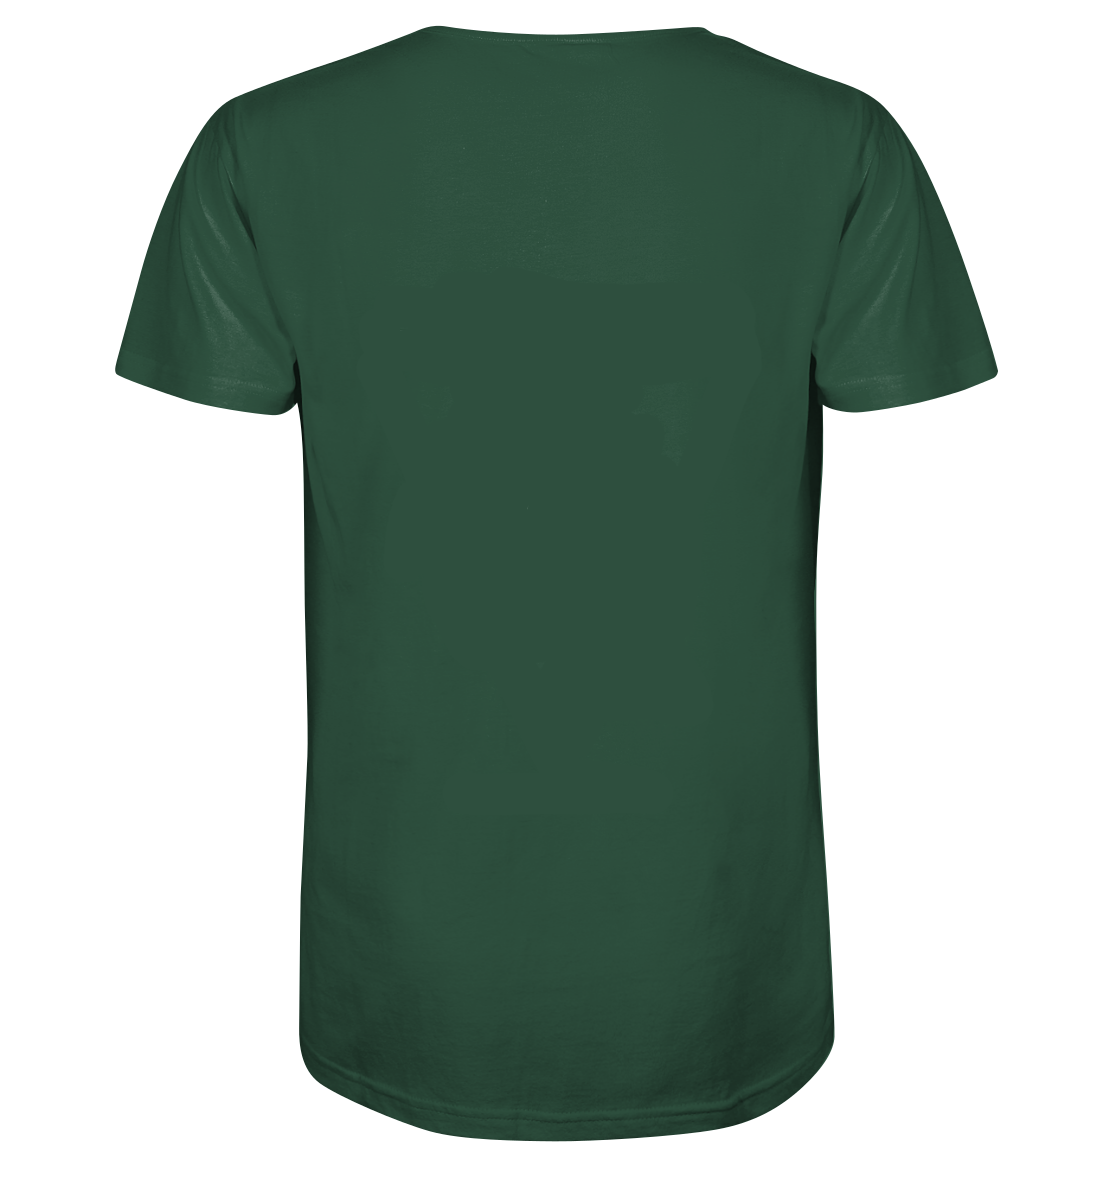 Natural State - Shirt